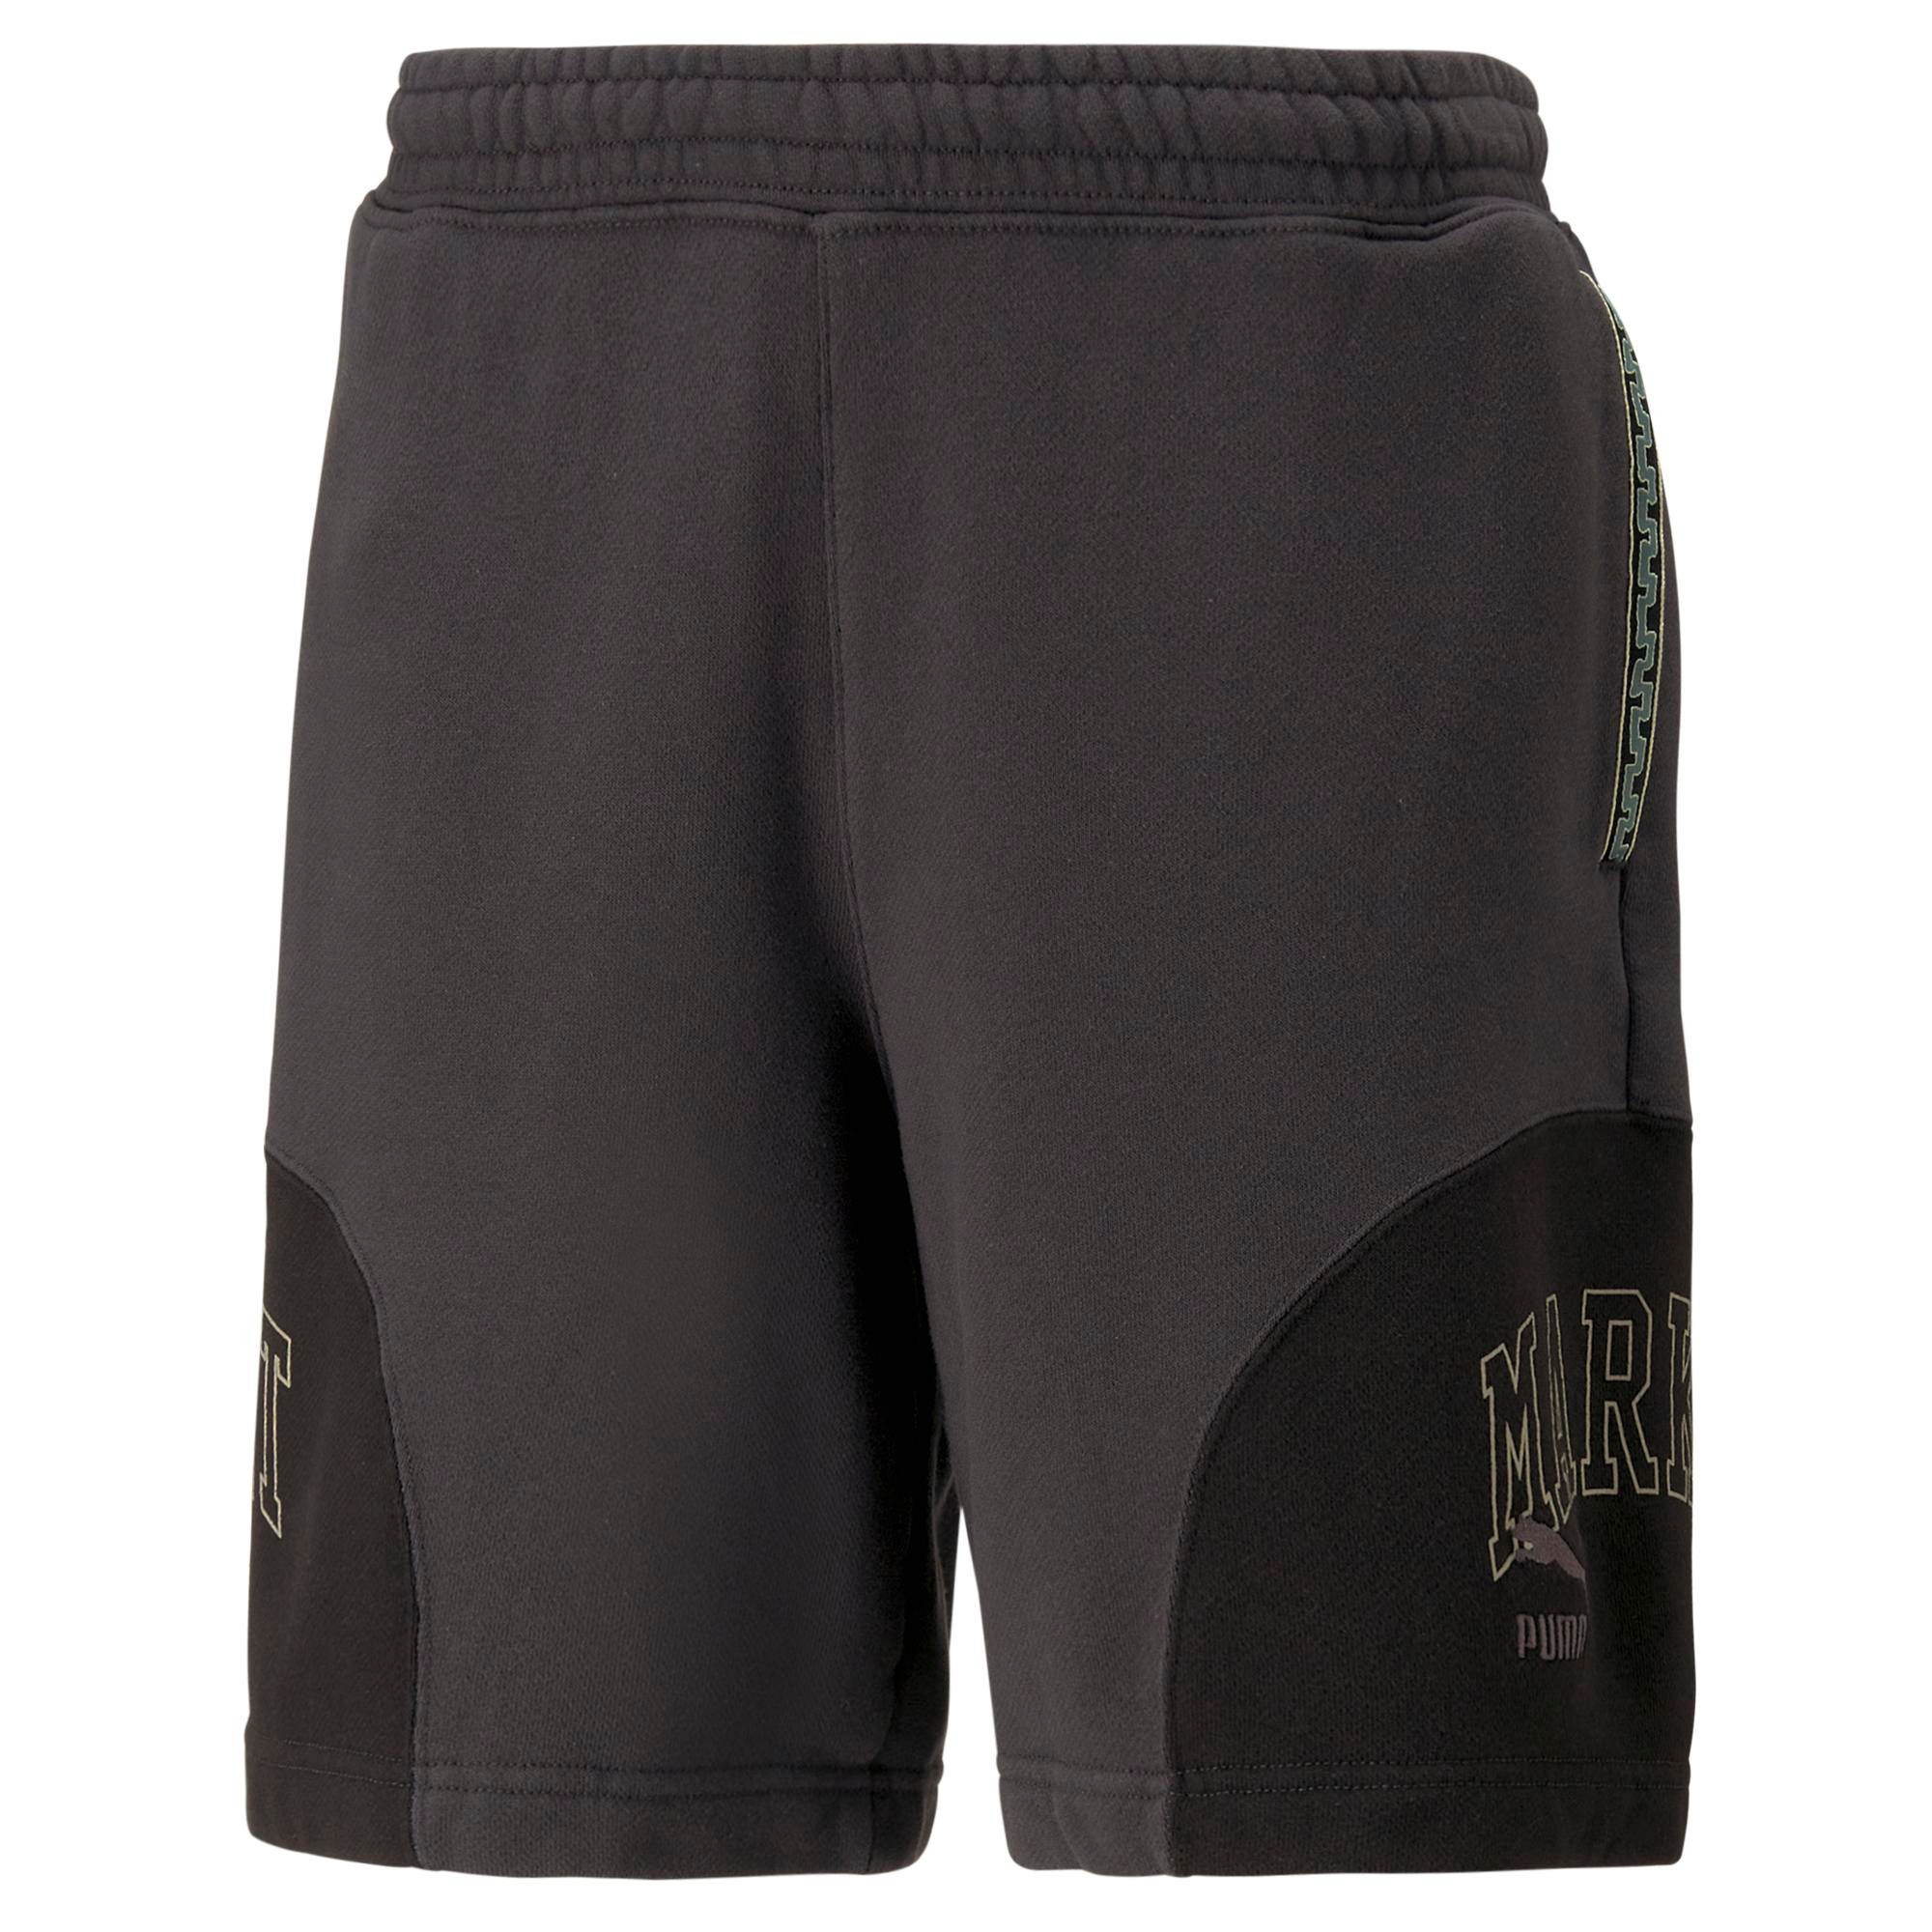 Puma x Market shorts, Black, large image number 0